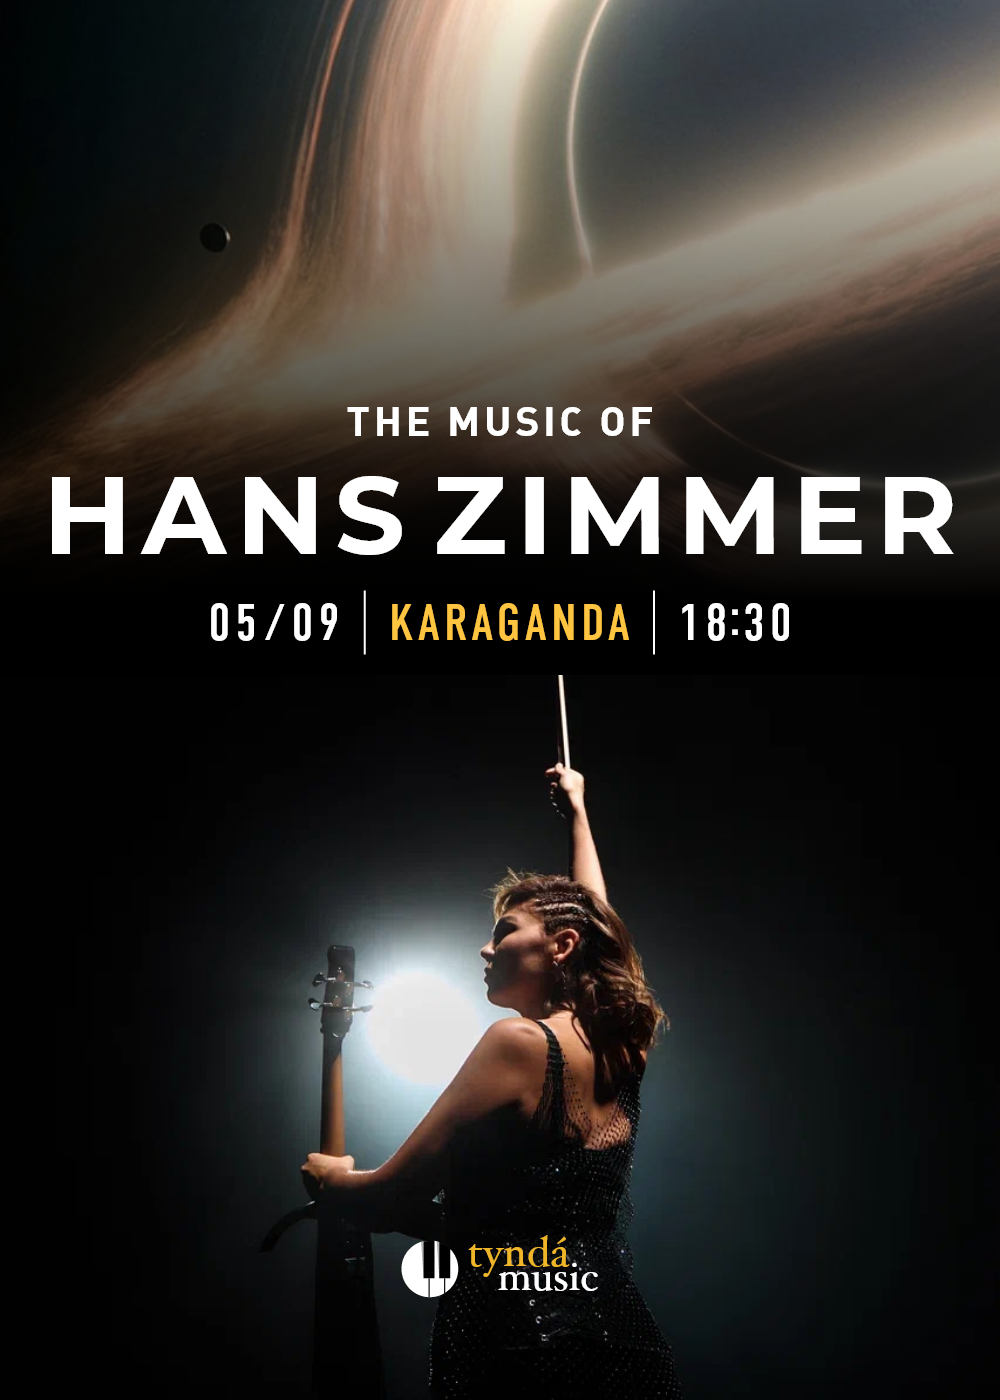 The World of Hans Zimmer in Karaganda